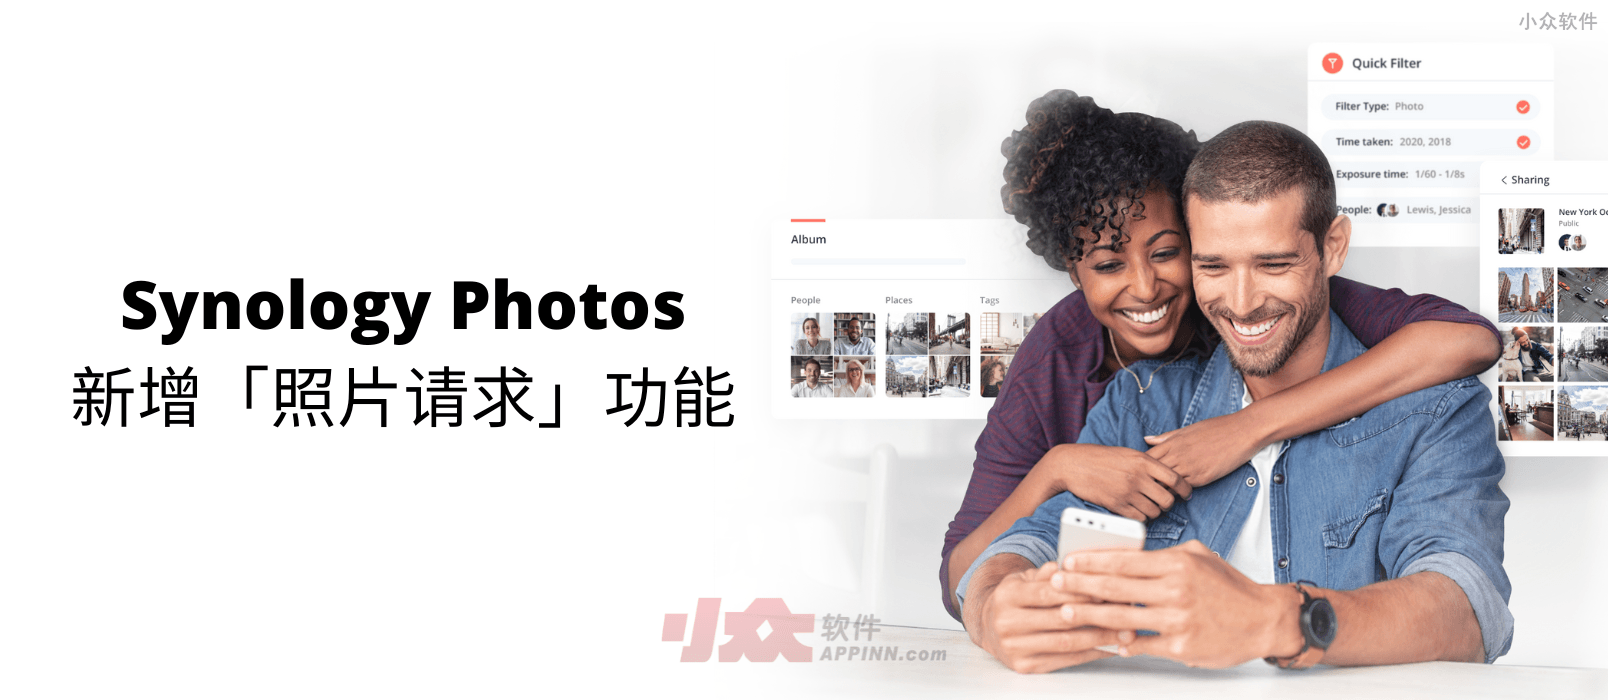 Synology Photos 套件更新，支持创建照片请求链接，向其他用户及访客搜集照片